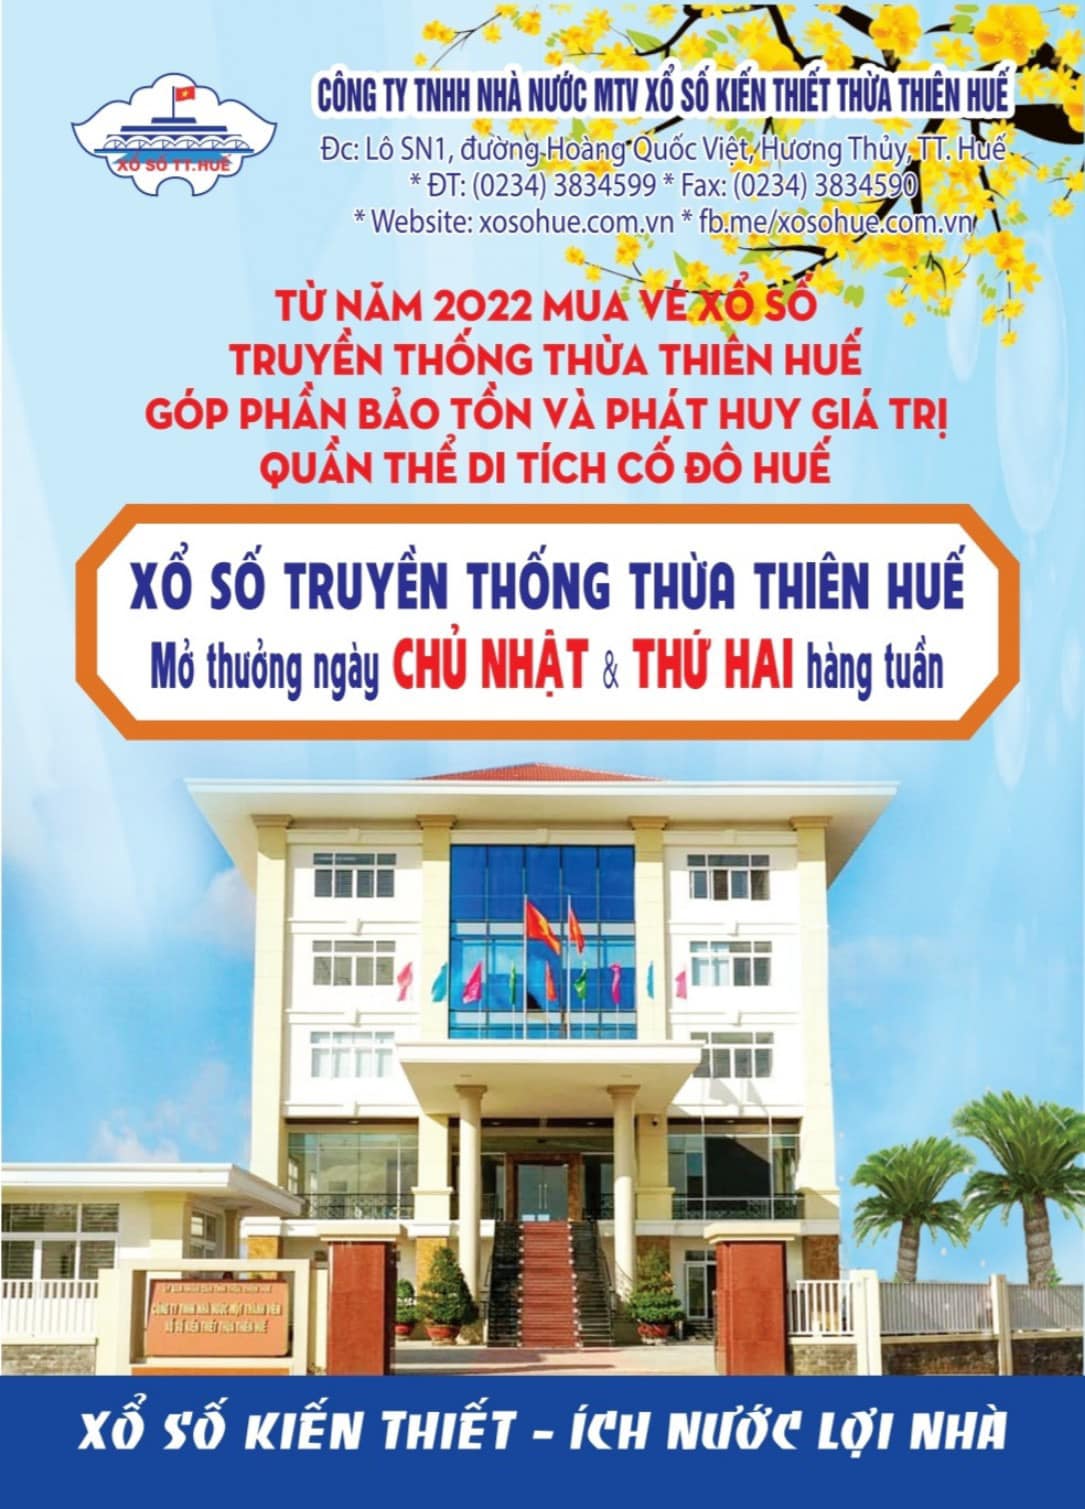 Công ty TNHH Nhà Nước MTV XSKT Thừa Thiên Huế